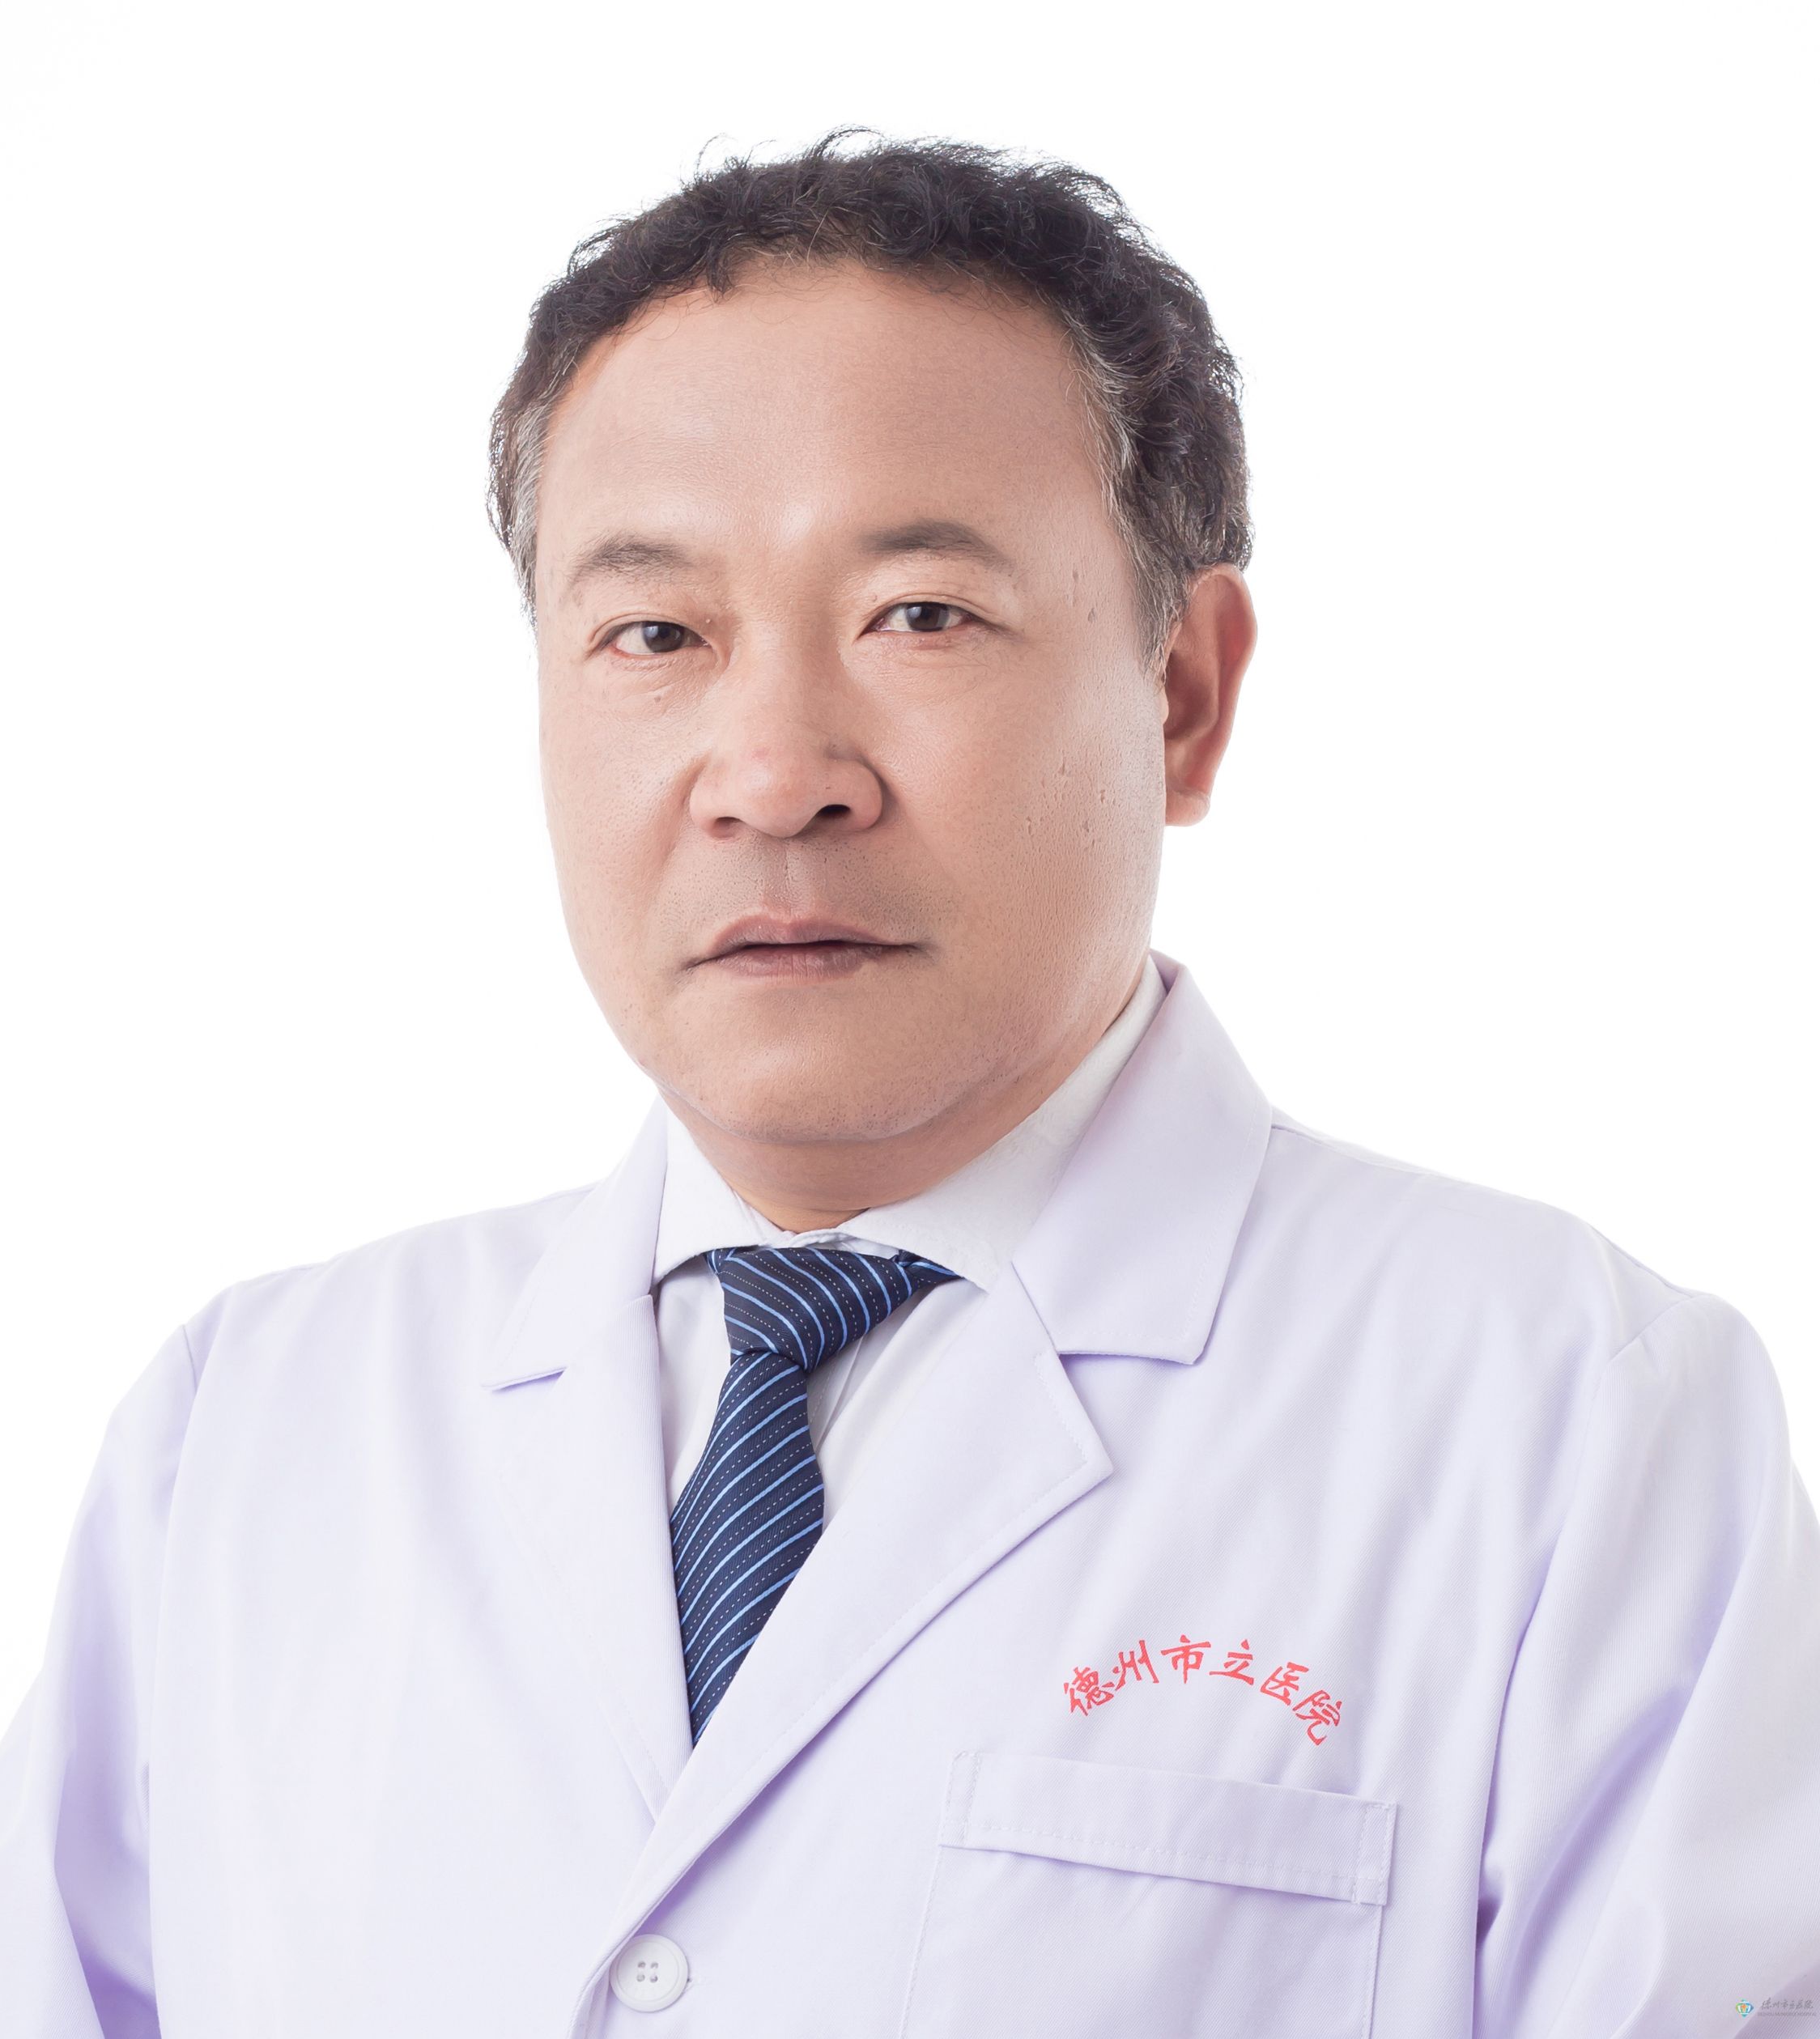 肾内科 主治医师 2005年于北京协和医院肾内科进修一年，长期从事肾内科常见疾病的诊断及治疗工作。并独立开展肾穿刺手术逾百例，血液透析